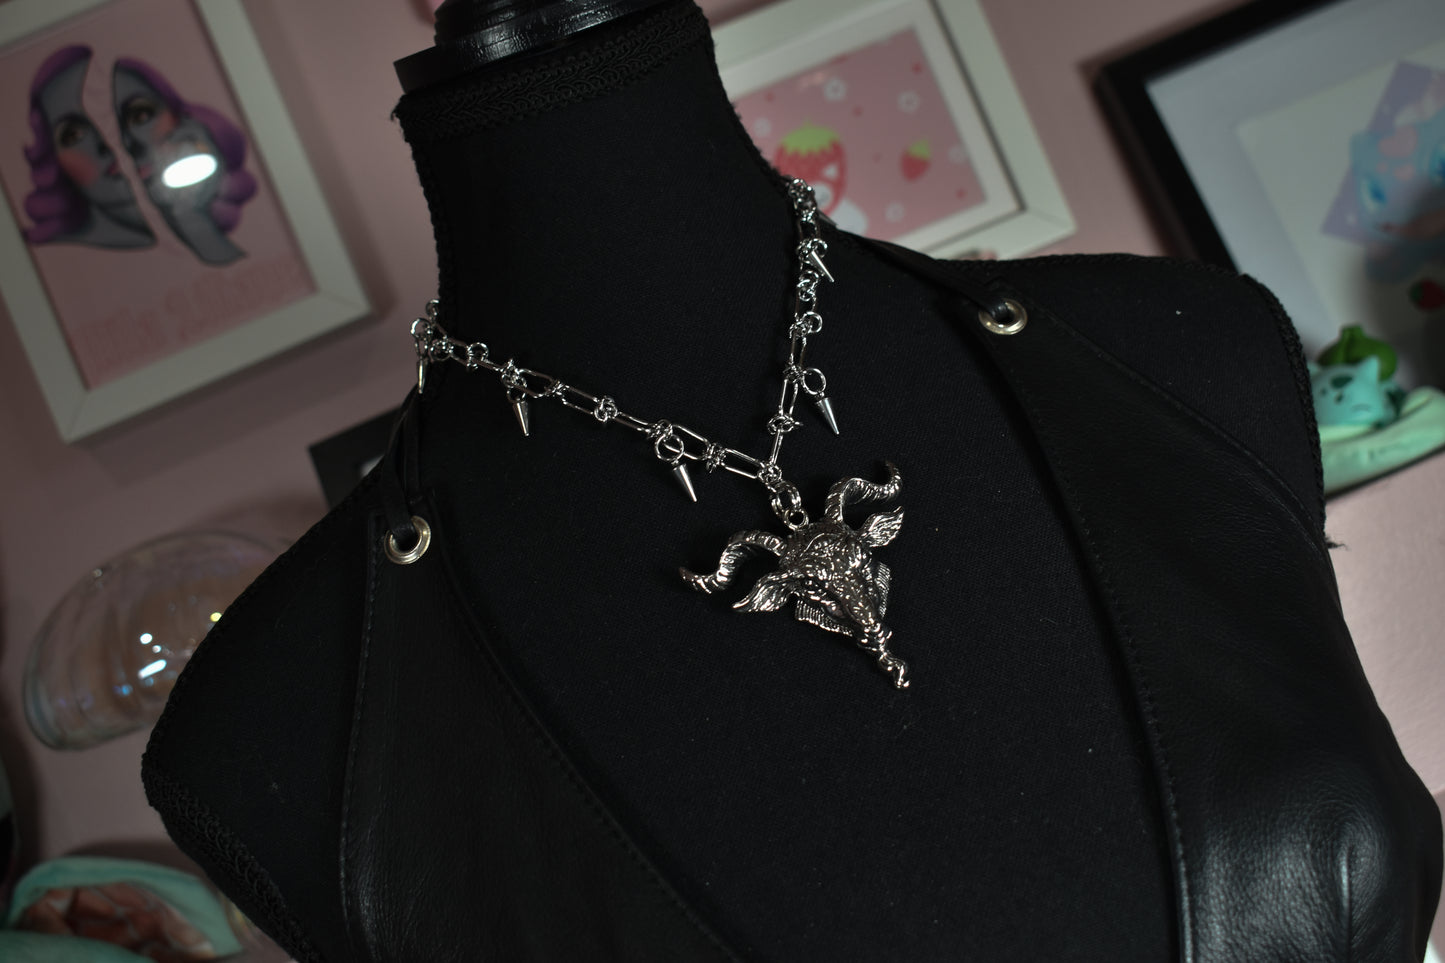 Baphomet necklace